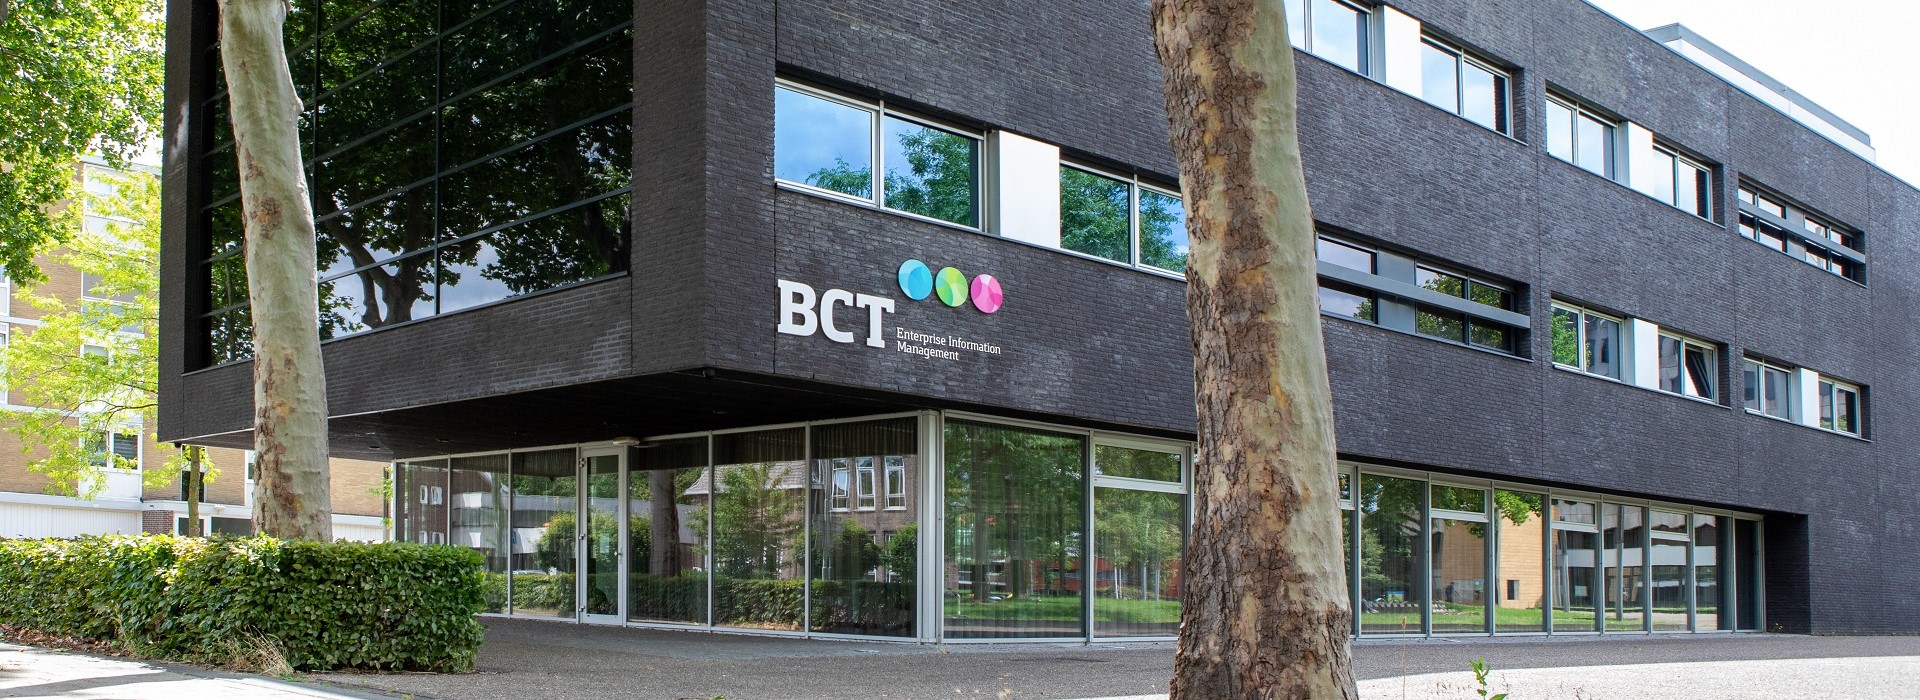 Meer weten over BCT